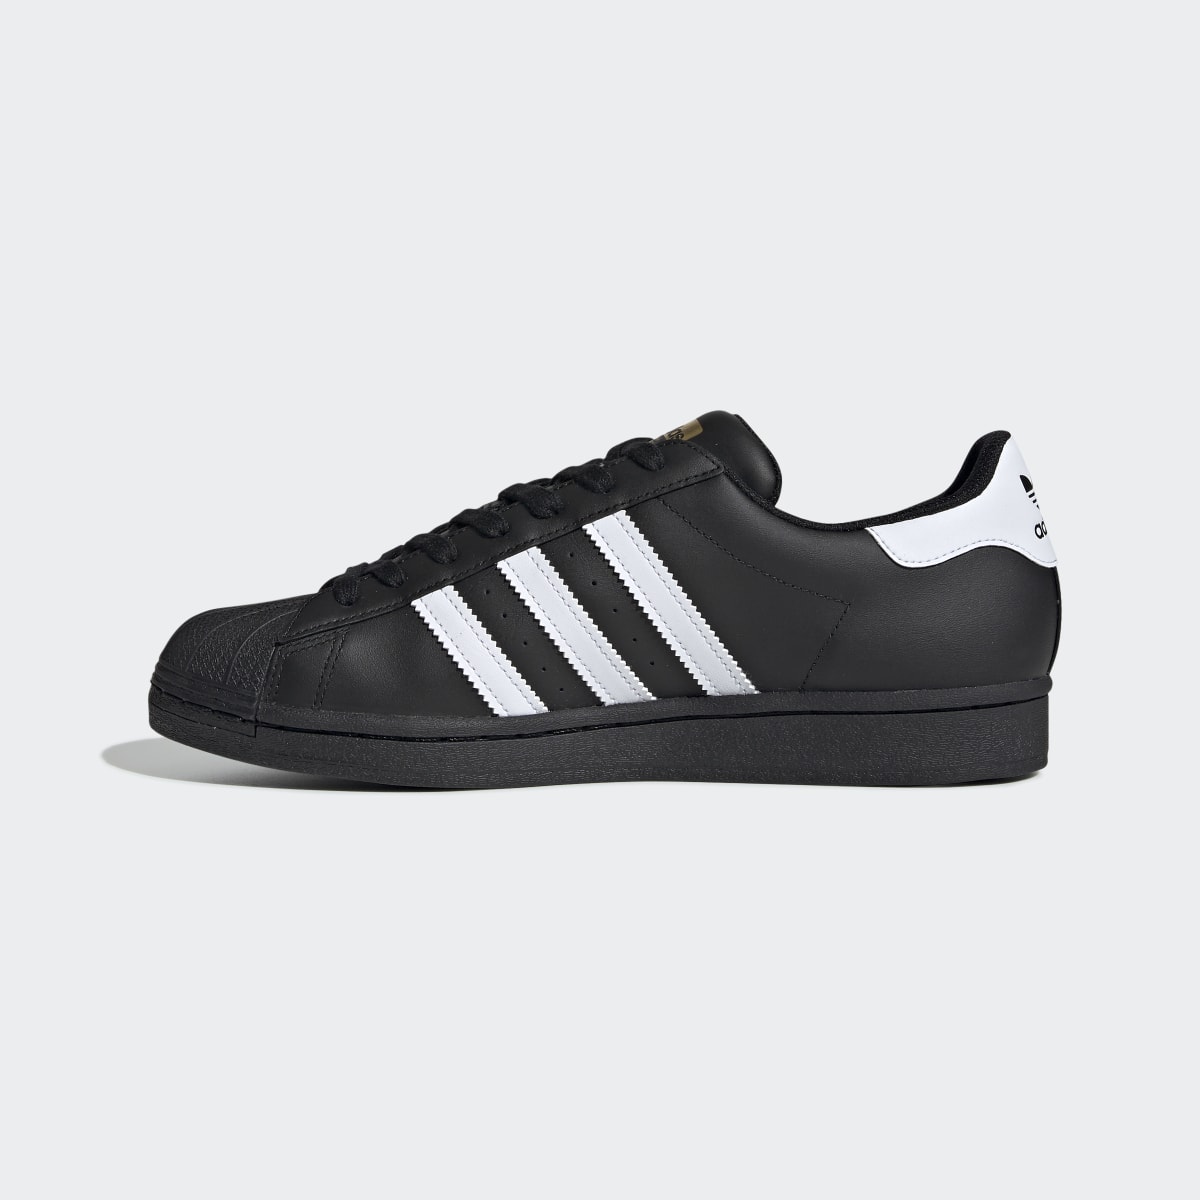 Adidas Superstar Ayakkabı. 10